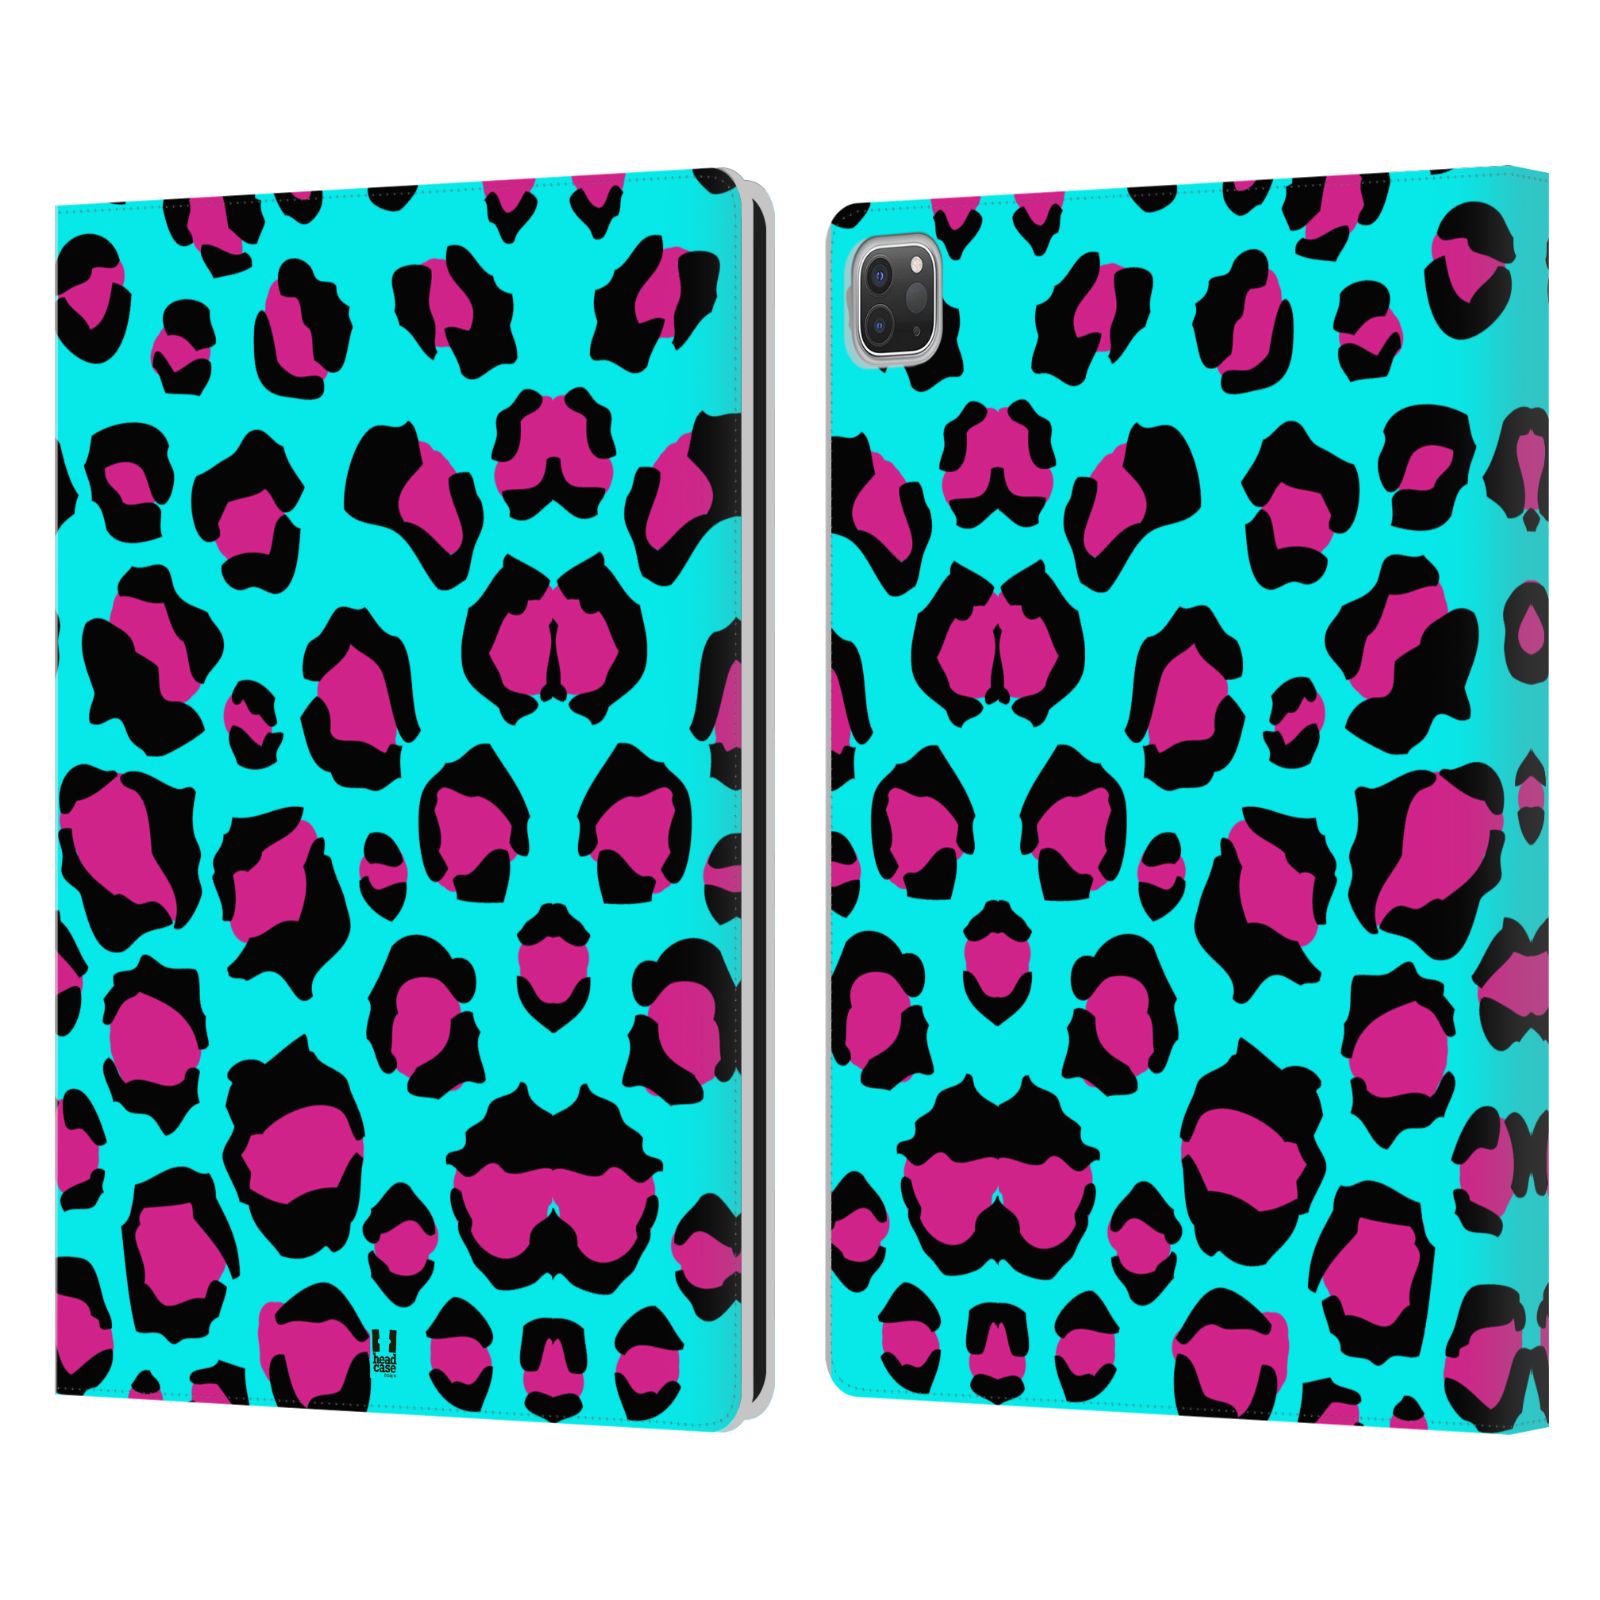 Pouzdro pro tablet Apple Ipad Pro 12.9 - HEAD CASE - Zvířecí barevné vzory tyrkysový leopard